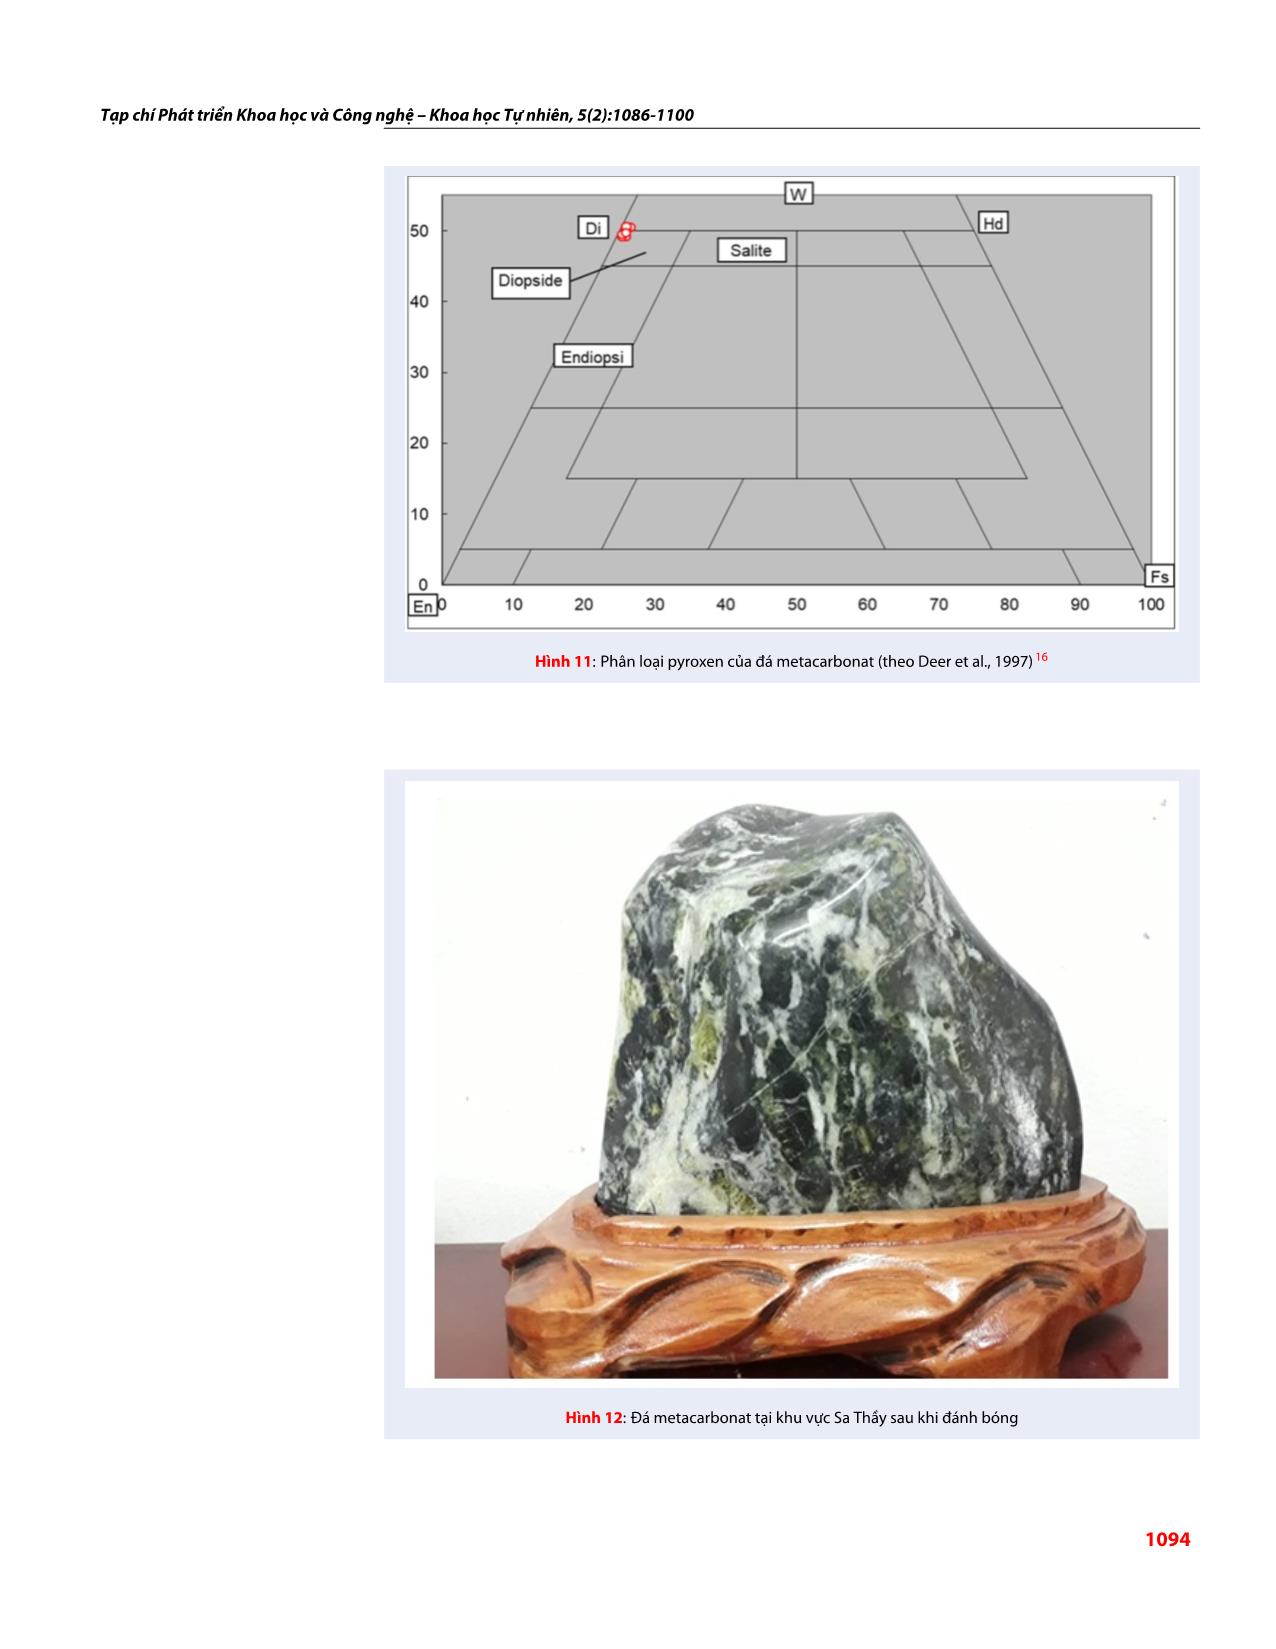 Đặc điểm thành phần khoáng vật trong đá metacarbonat khu vực Sa Thầy, Kon Tum và khả năng ứng dụng của metacarbonat trong đá mỹ nghệ trang 9